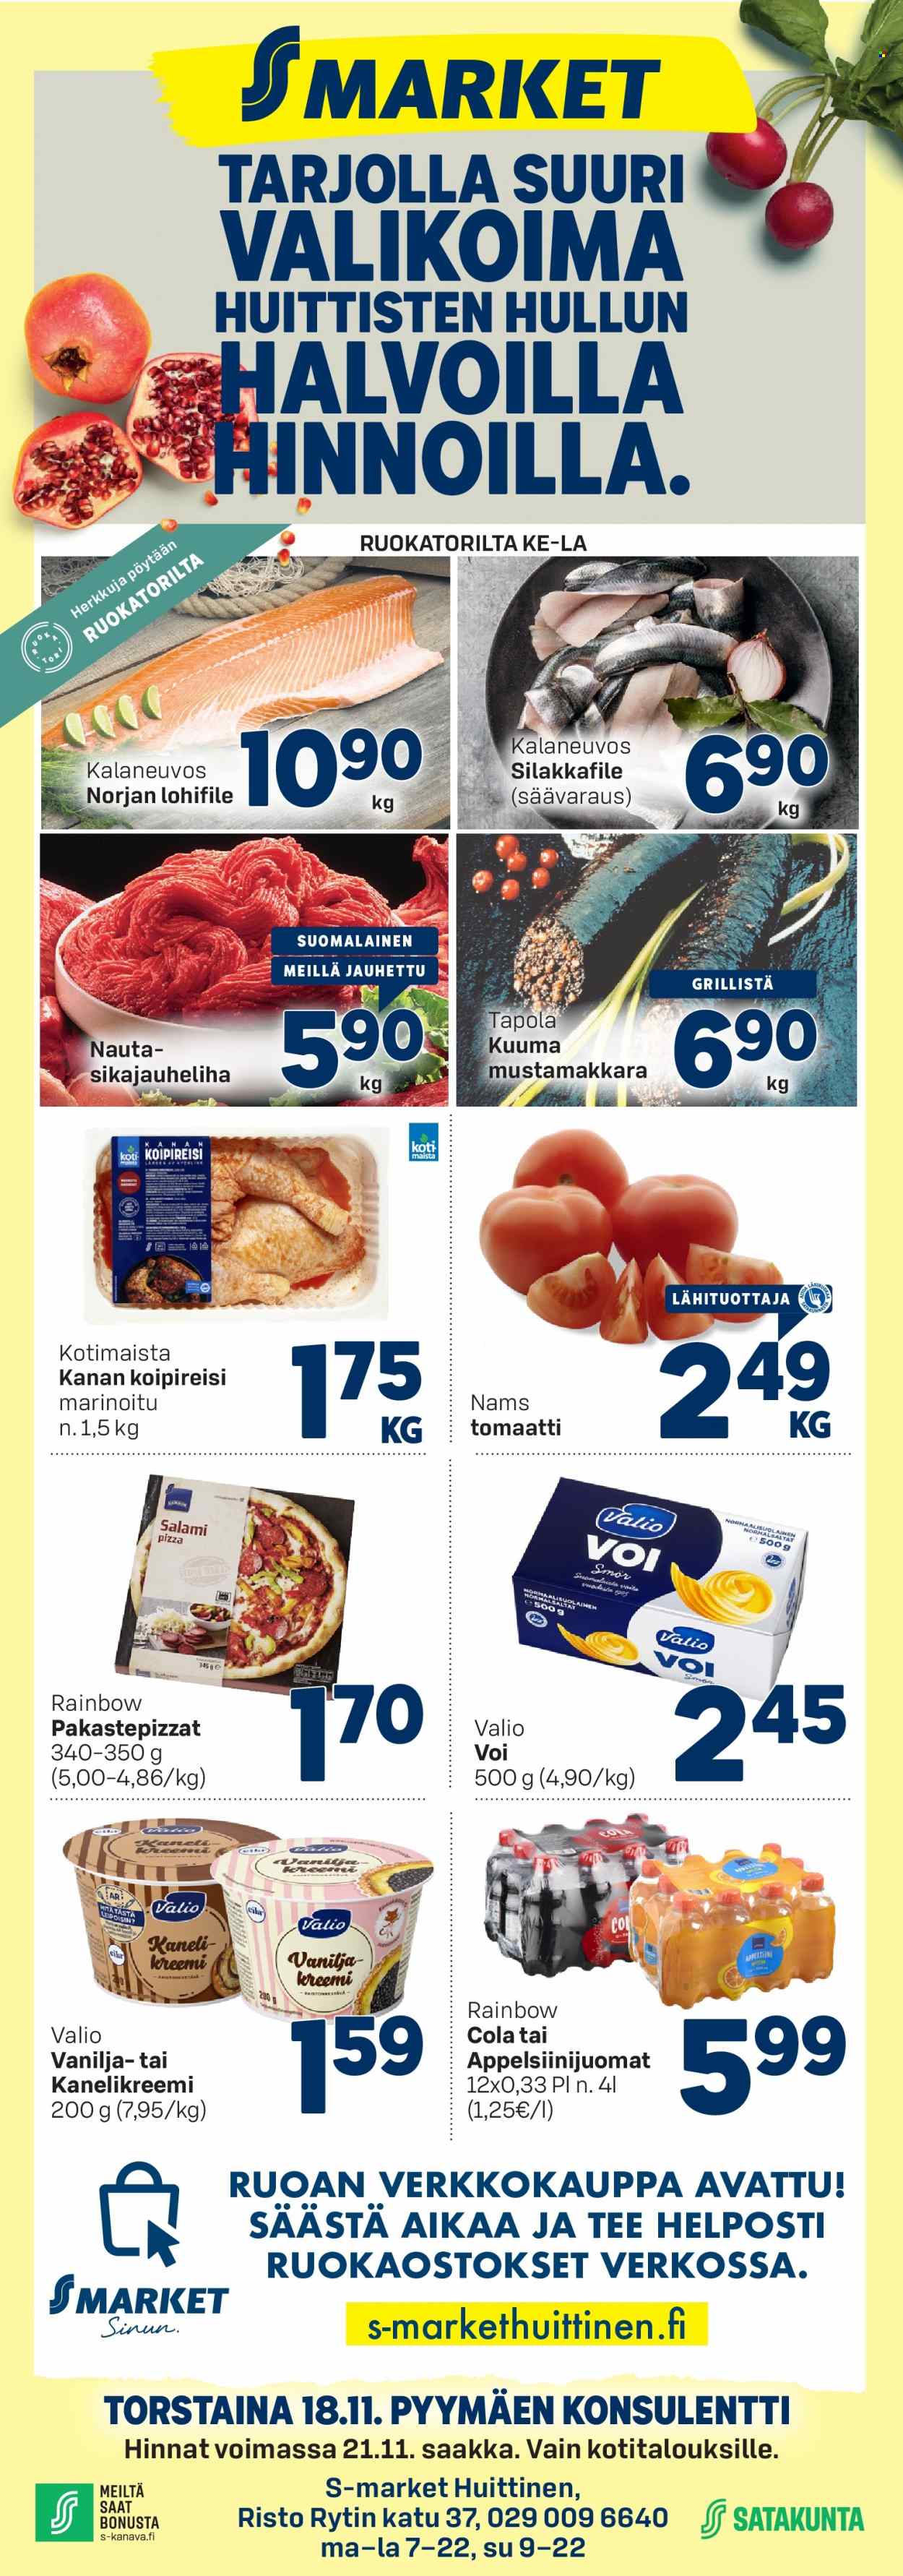 thumbnail - S-market tarjoukset  - 18.11.2021 - 21.11.2021 - Tarjoustuotteet - tomaatti, kanan, kanan koipireisi, mustamakkara, vanilja. Sivu 1.